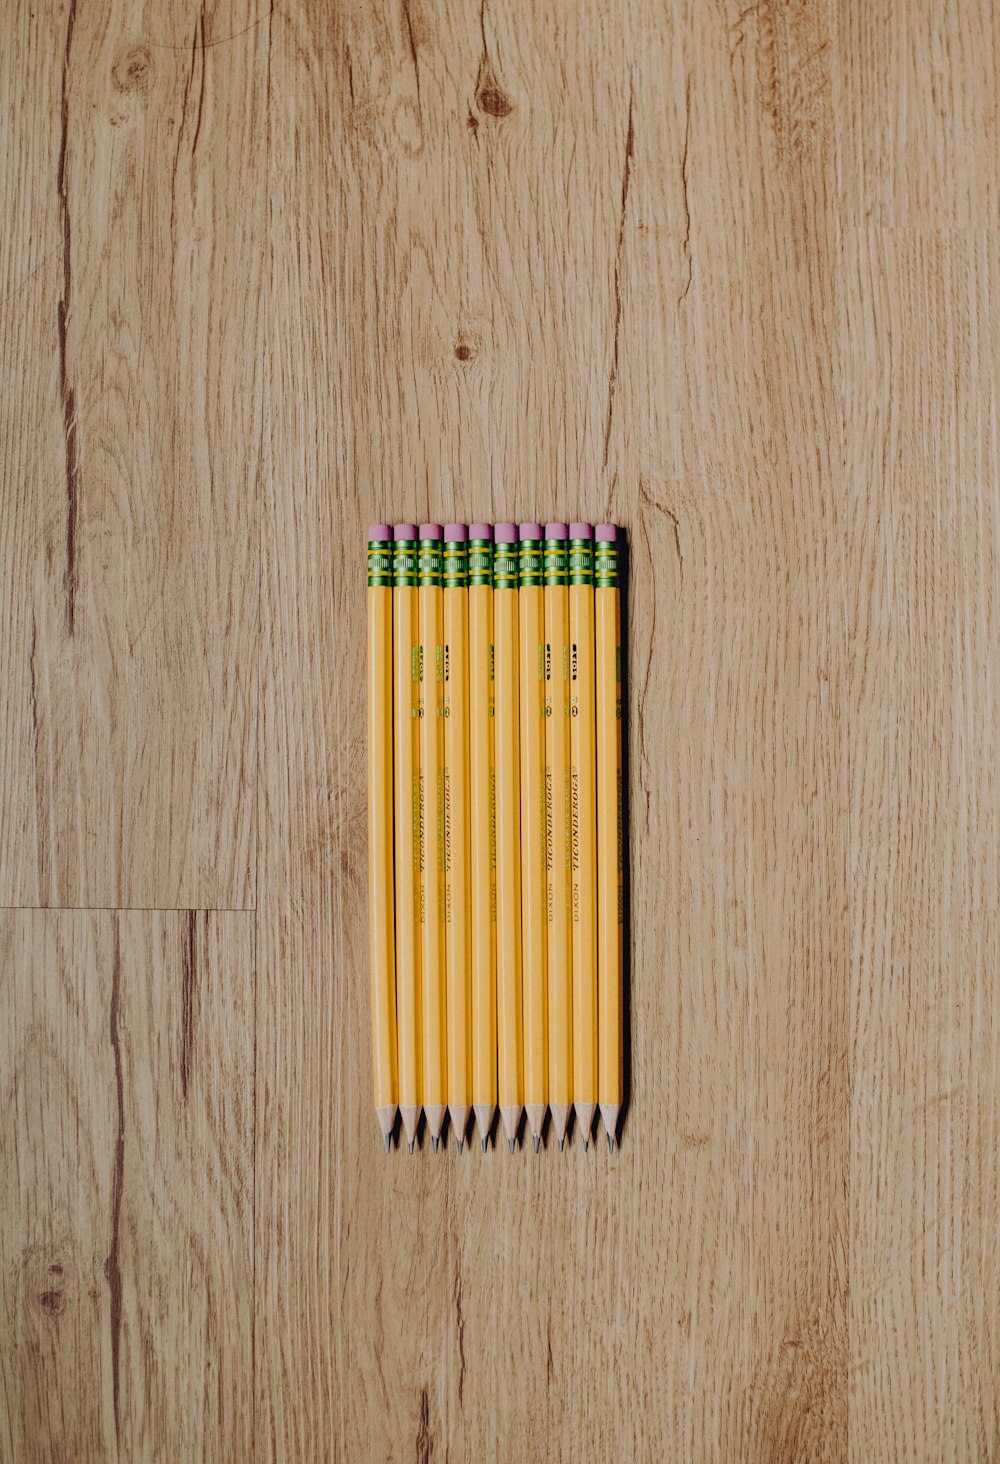 Crayon de couleur jaune, vert et rouge